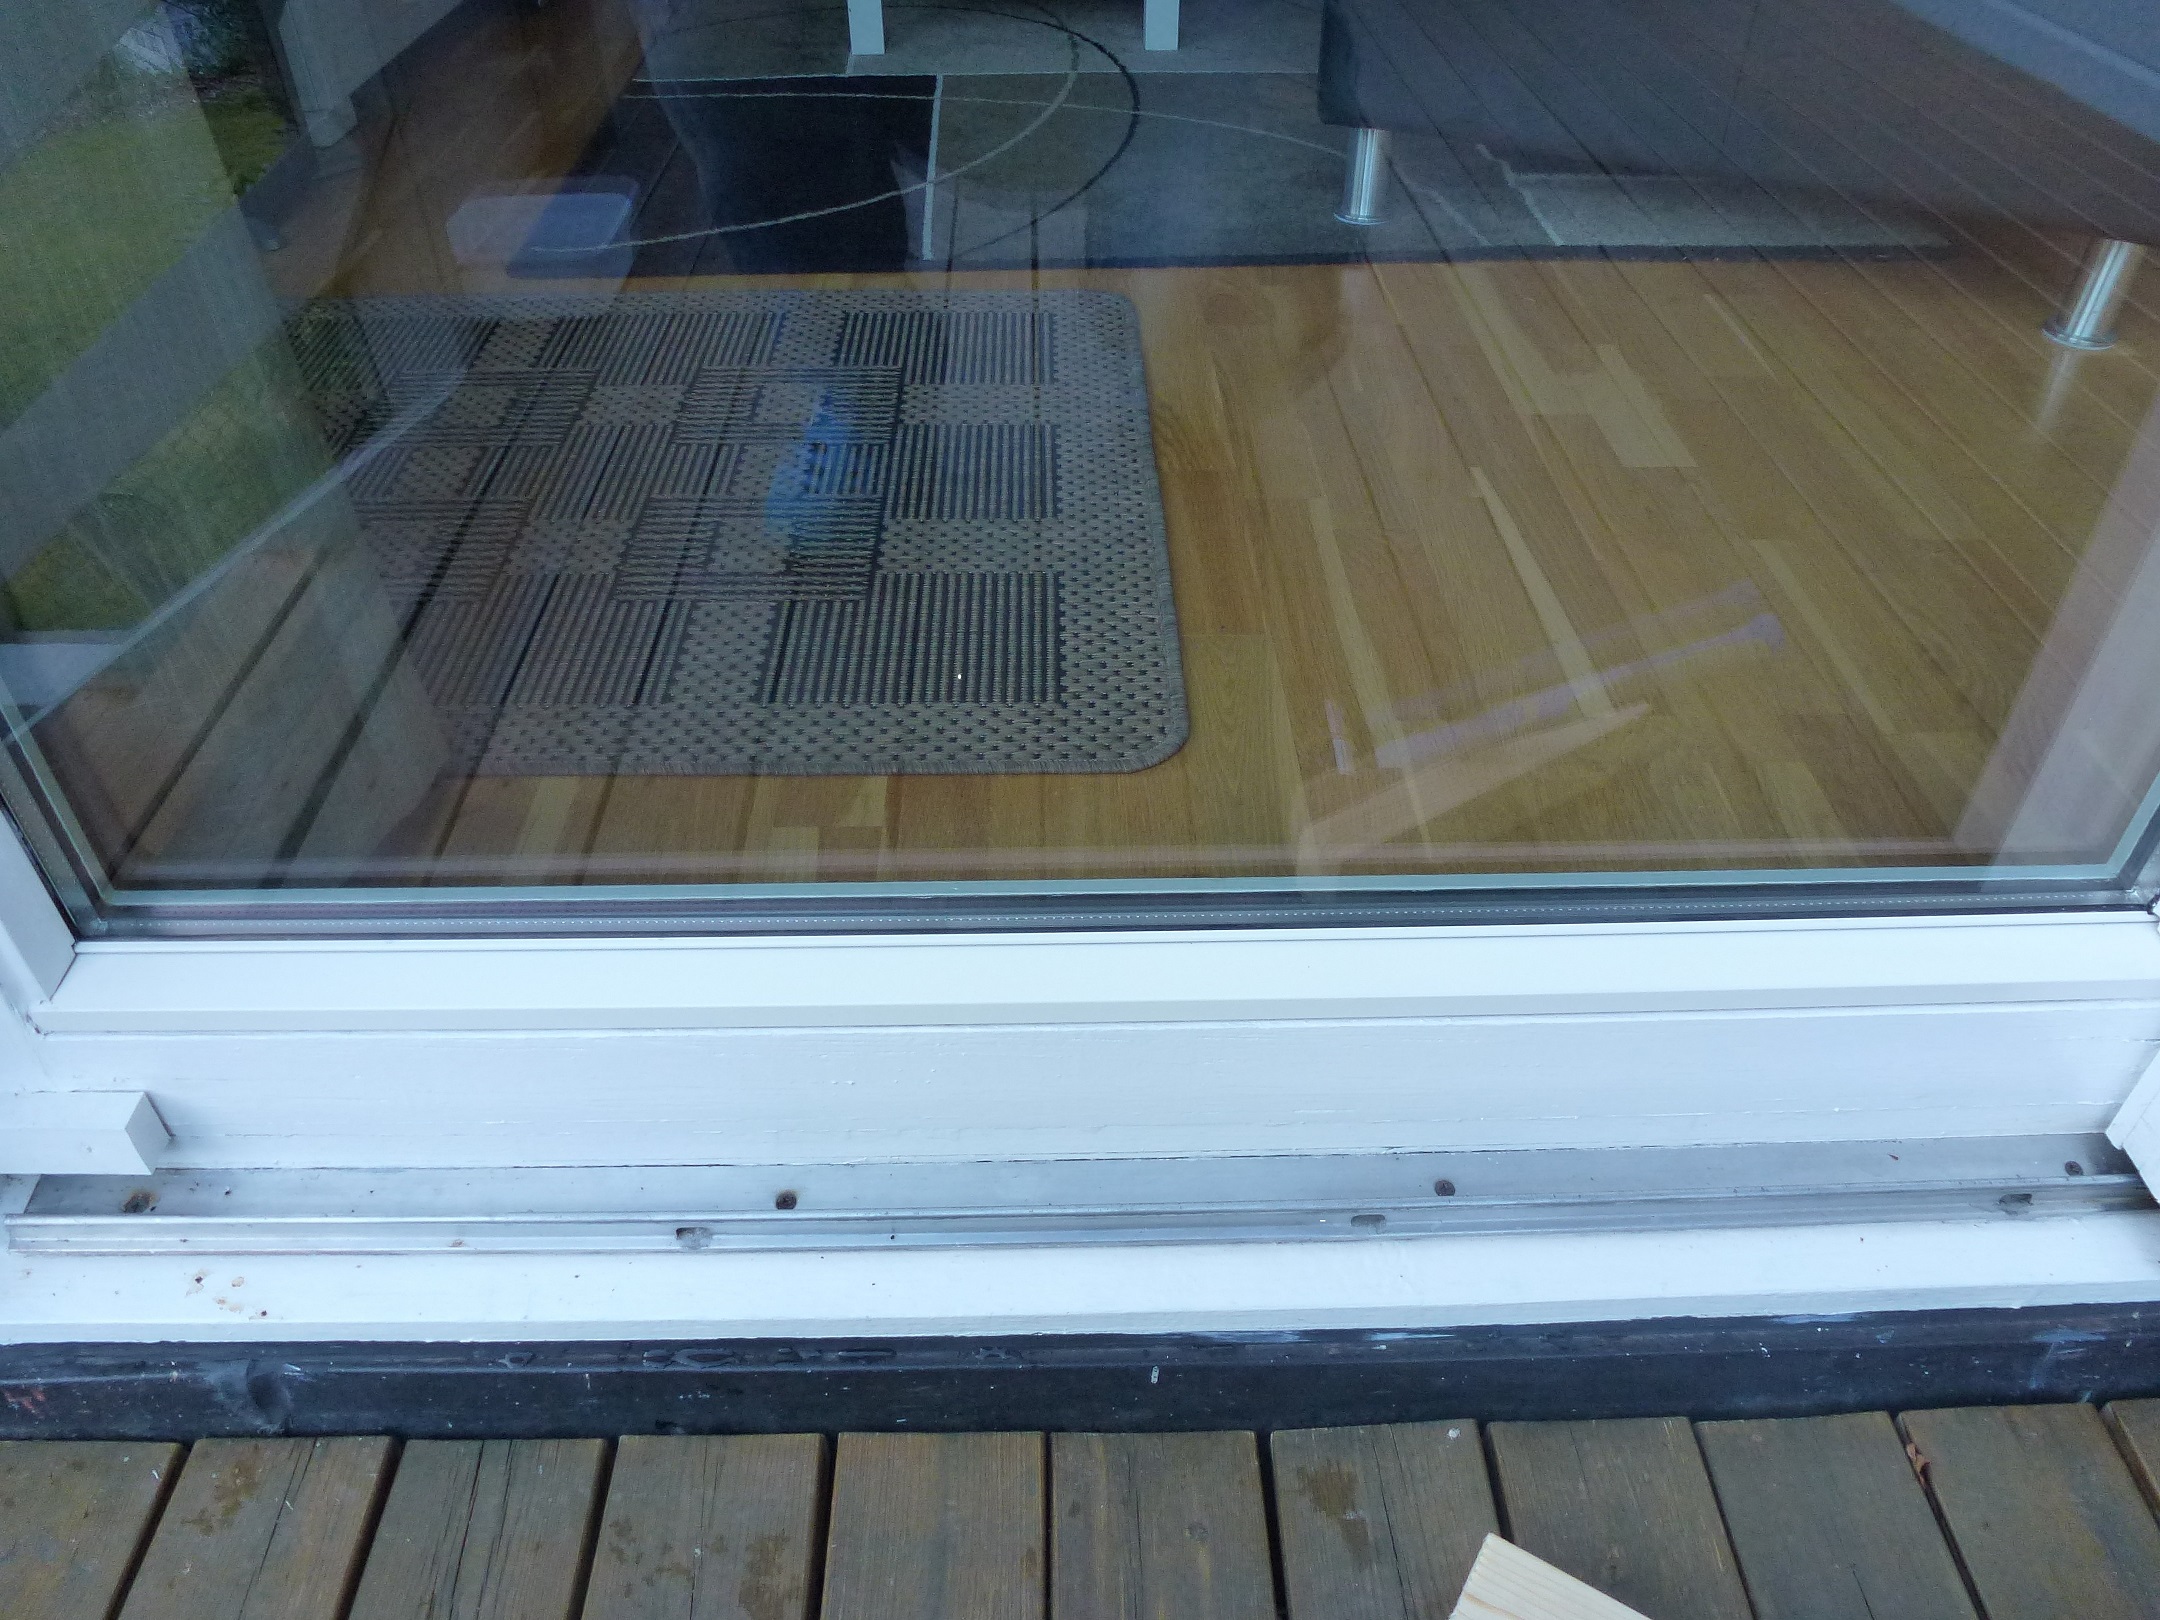 Bunnlisten på vinduet er ikkje 100 % tett. Er det vanligt? - P1010176676.jpg - peterka